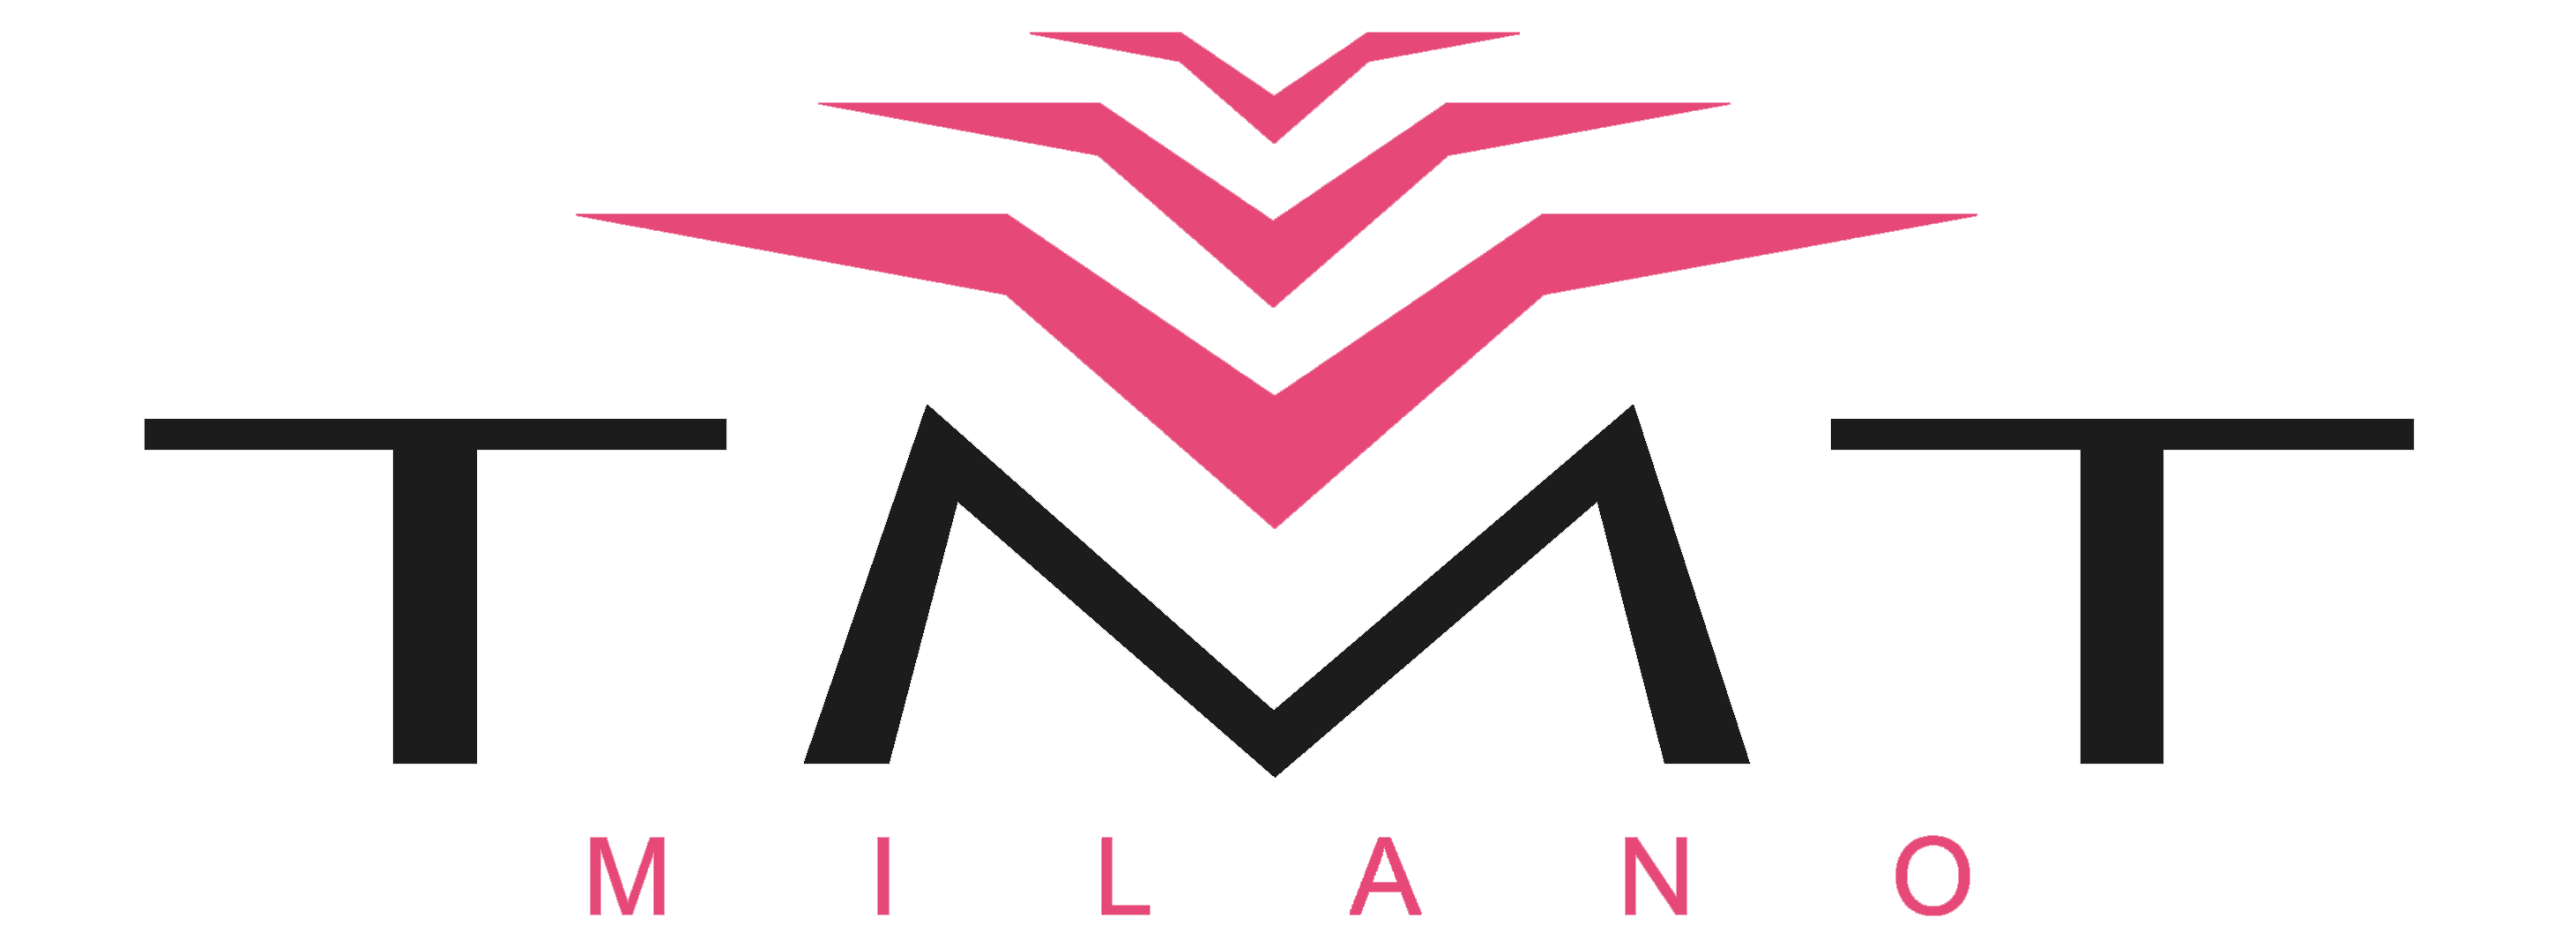 TMT Milano